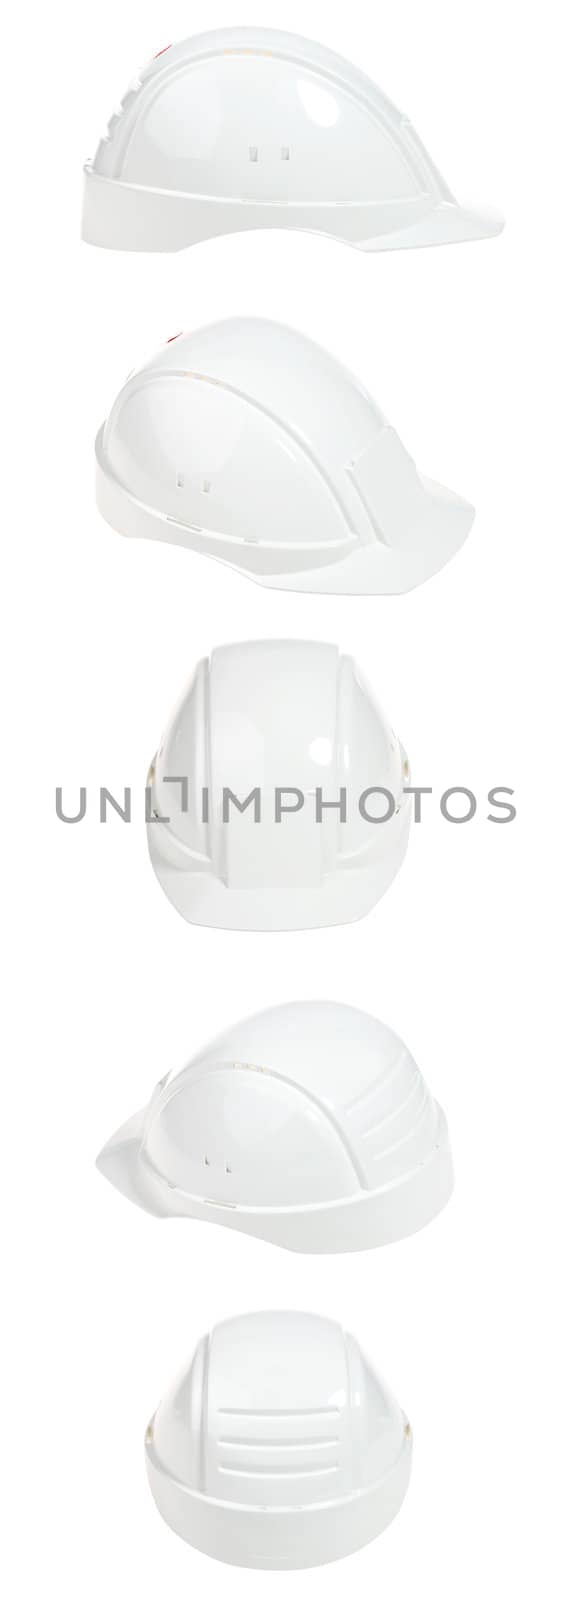 Helmet by fotoedgaras